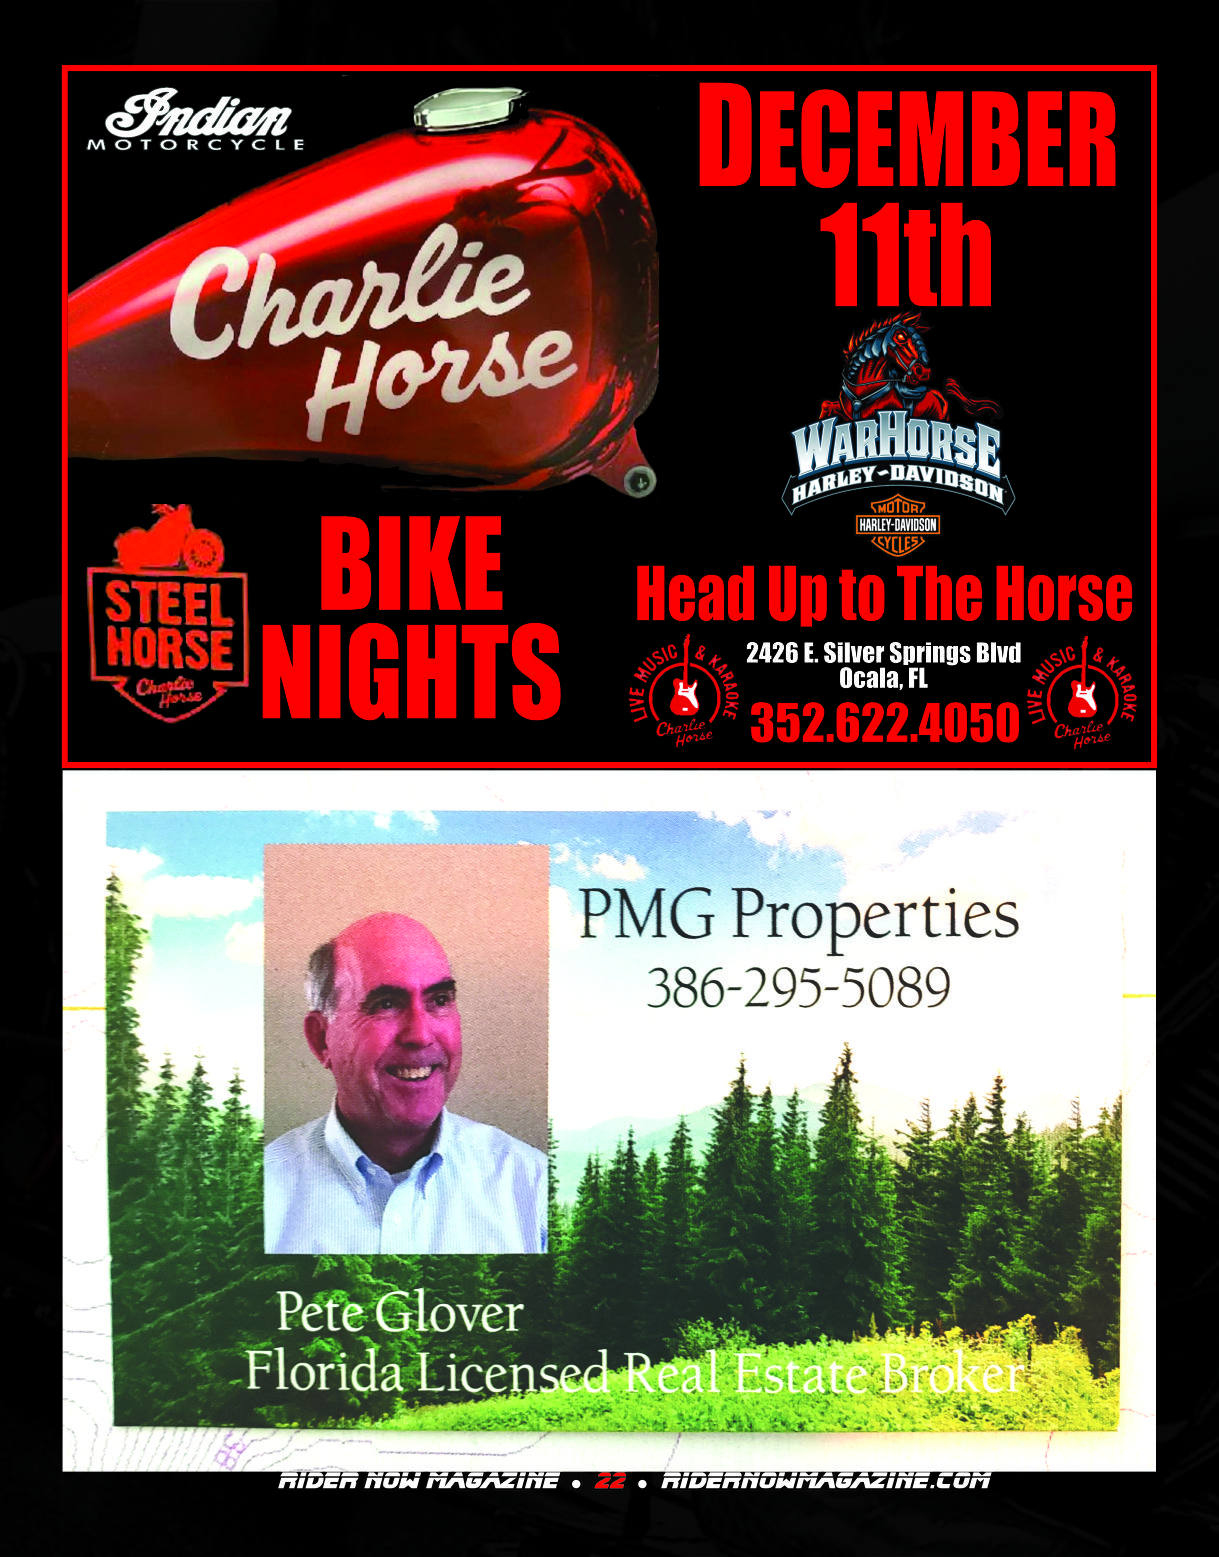 Charlie Horse Bike Nights